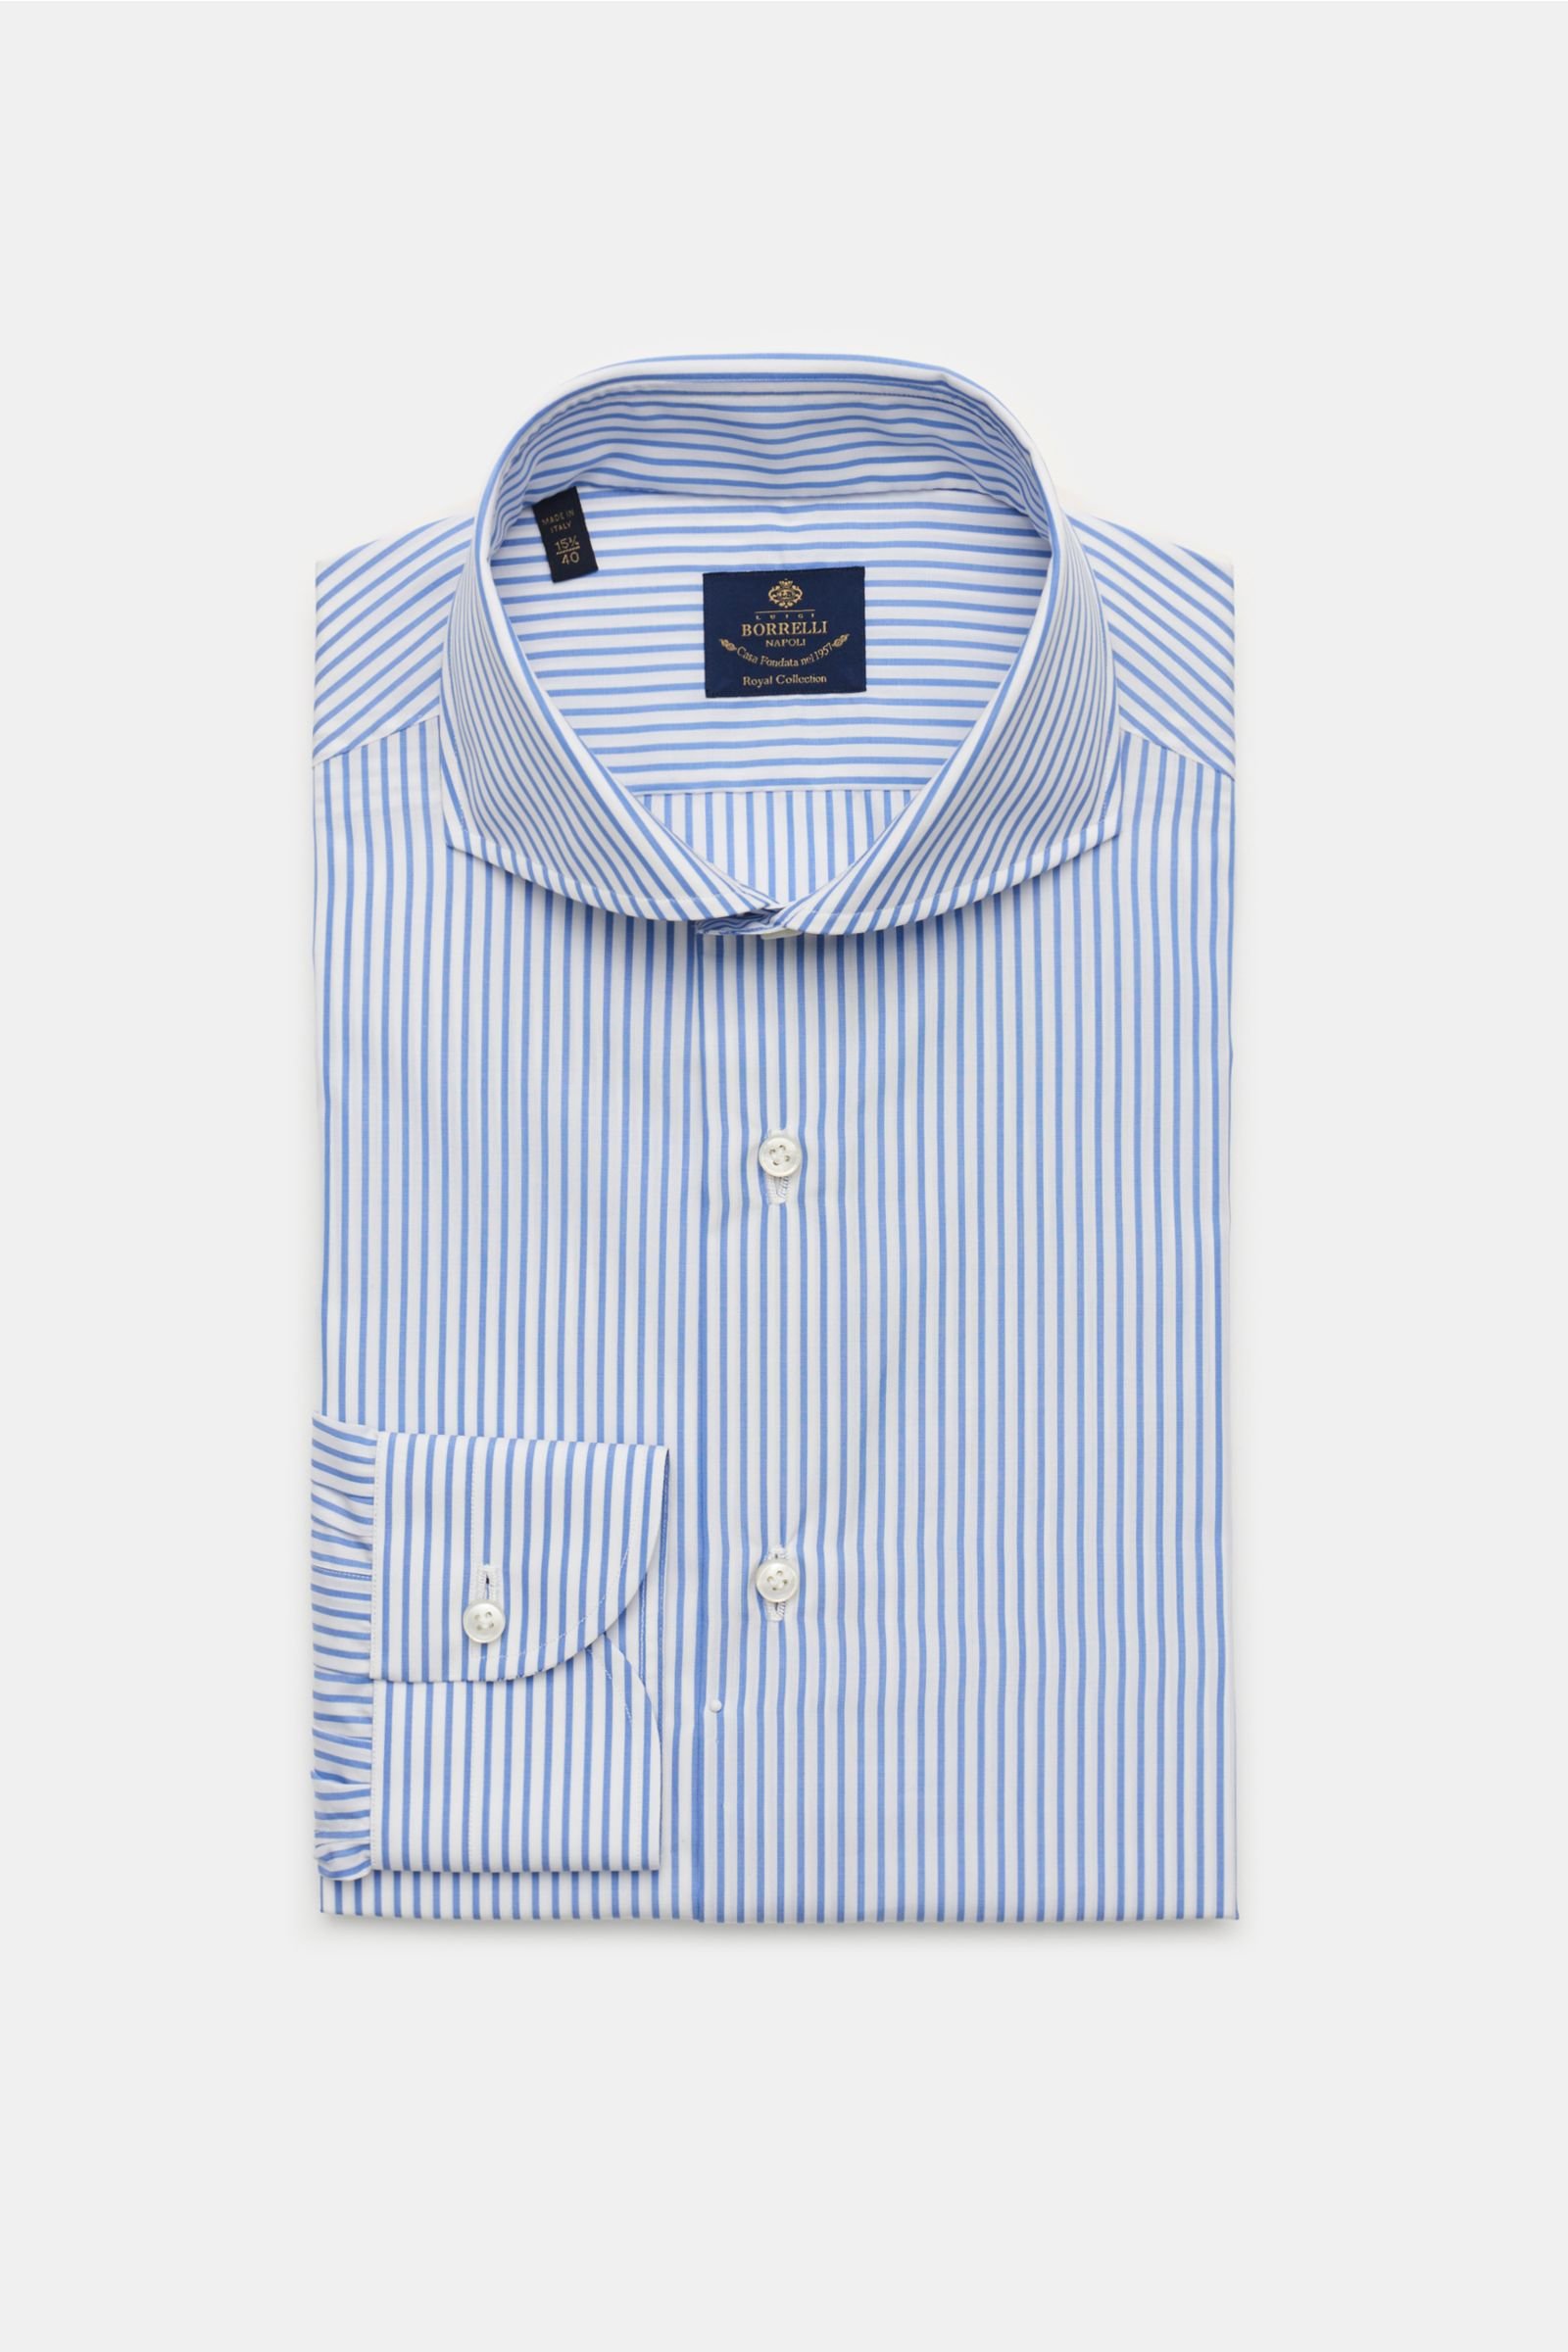 Business shirt 'Sandro' shark collar light blue/white striped